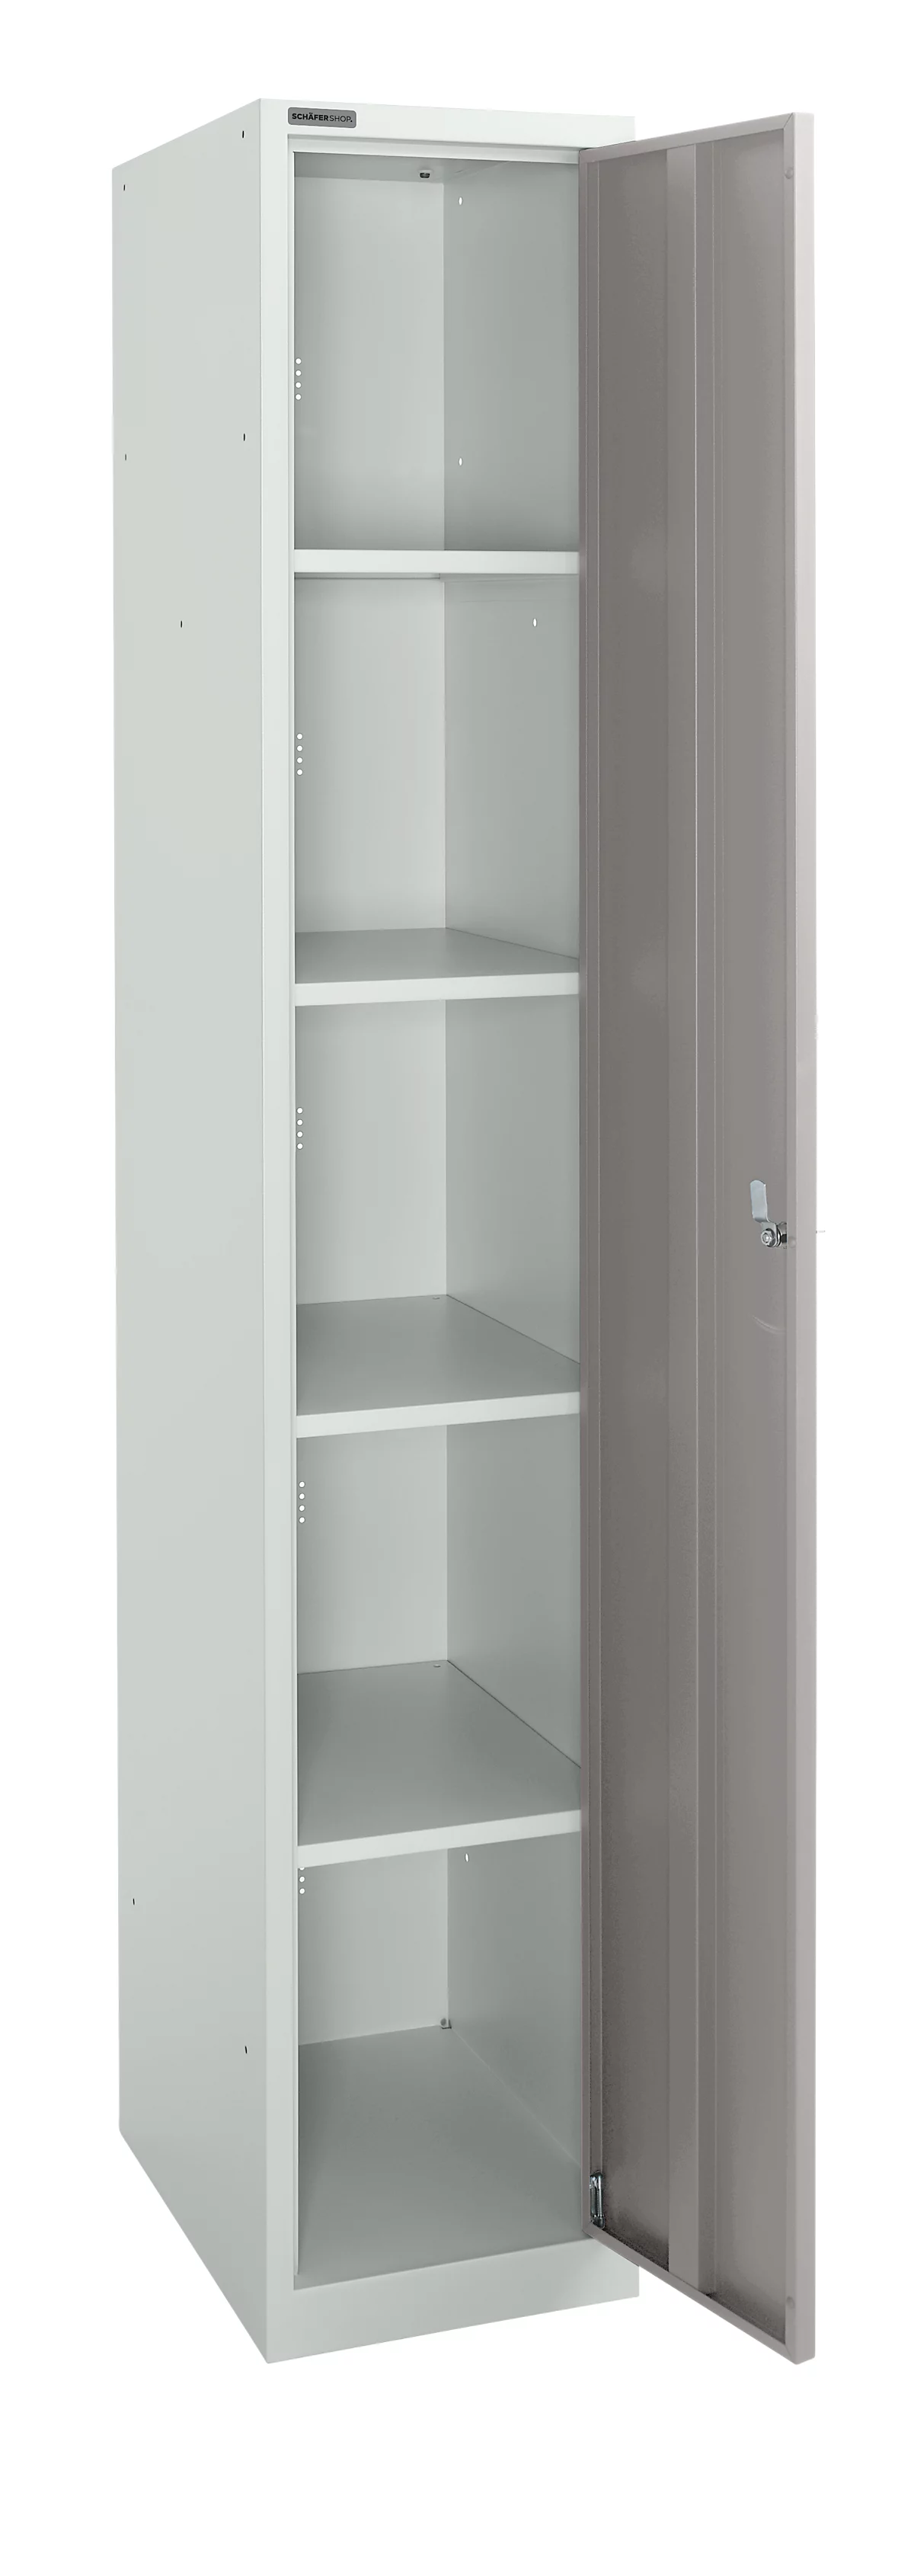 Schäfer Shop Select Armario de guardarropa, 1 compartimento de 350 mm de ancho, 5 compartimentos con 4 estantes, con cerradura, gris claro/gris platino